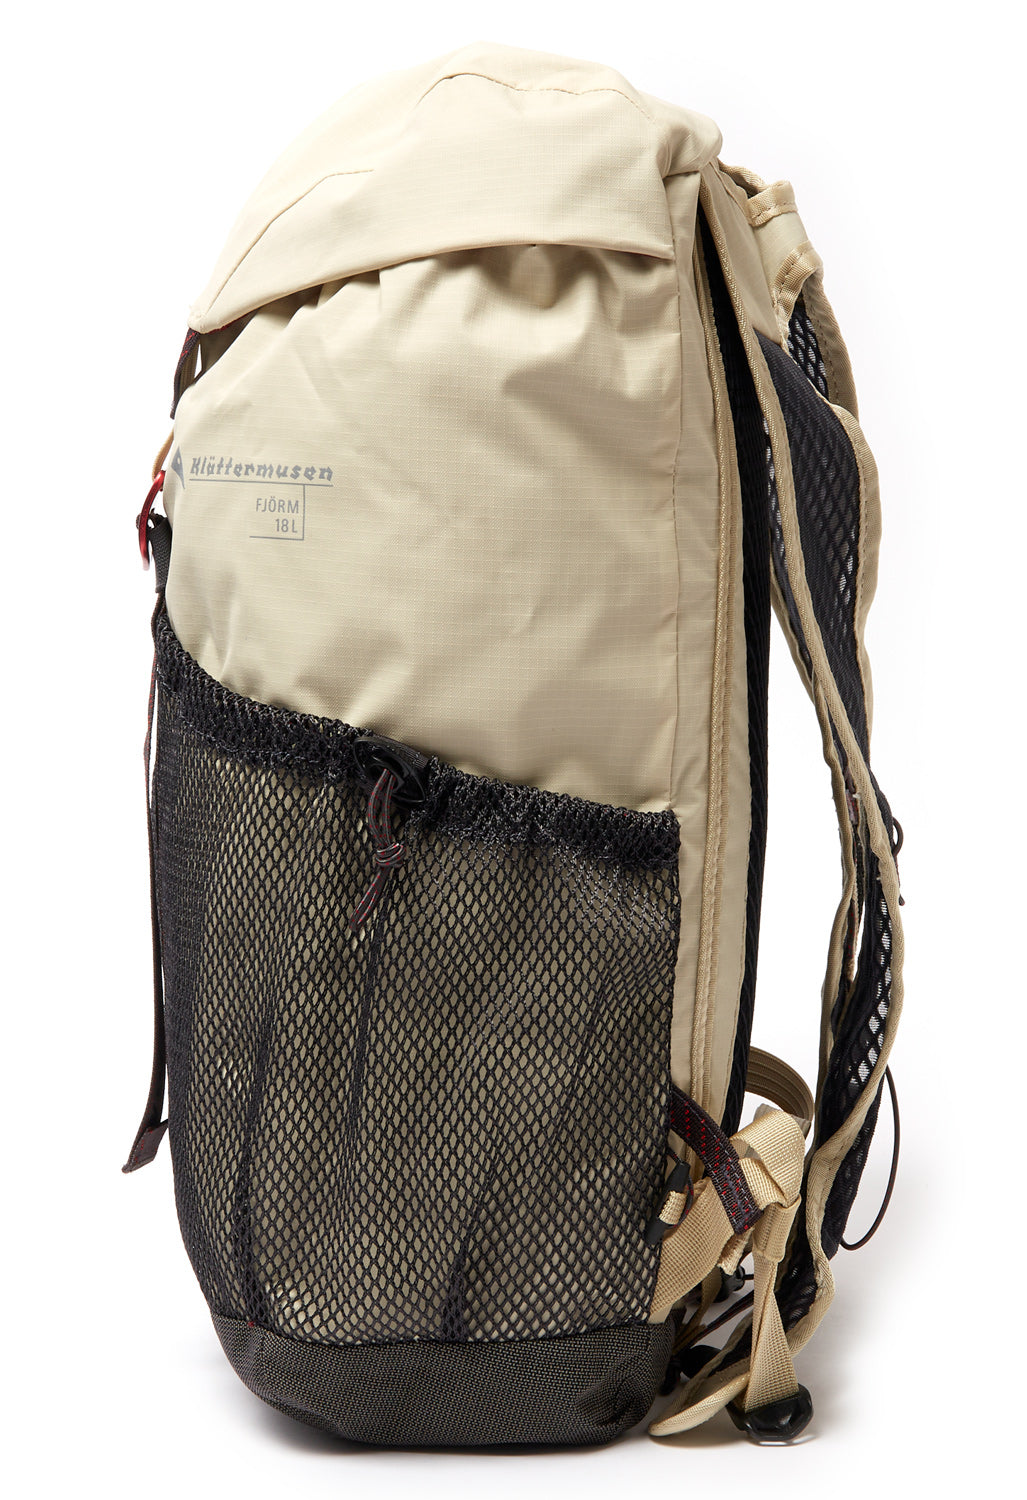 Klattermusen Fjorm Backpack 18L - Clay